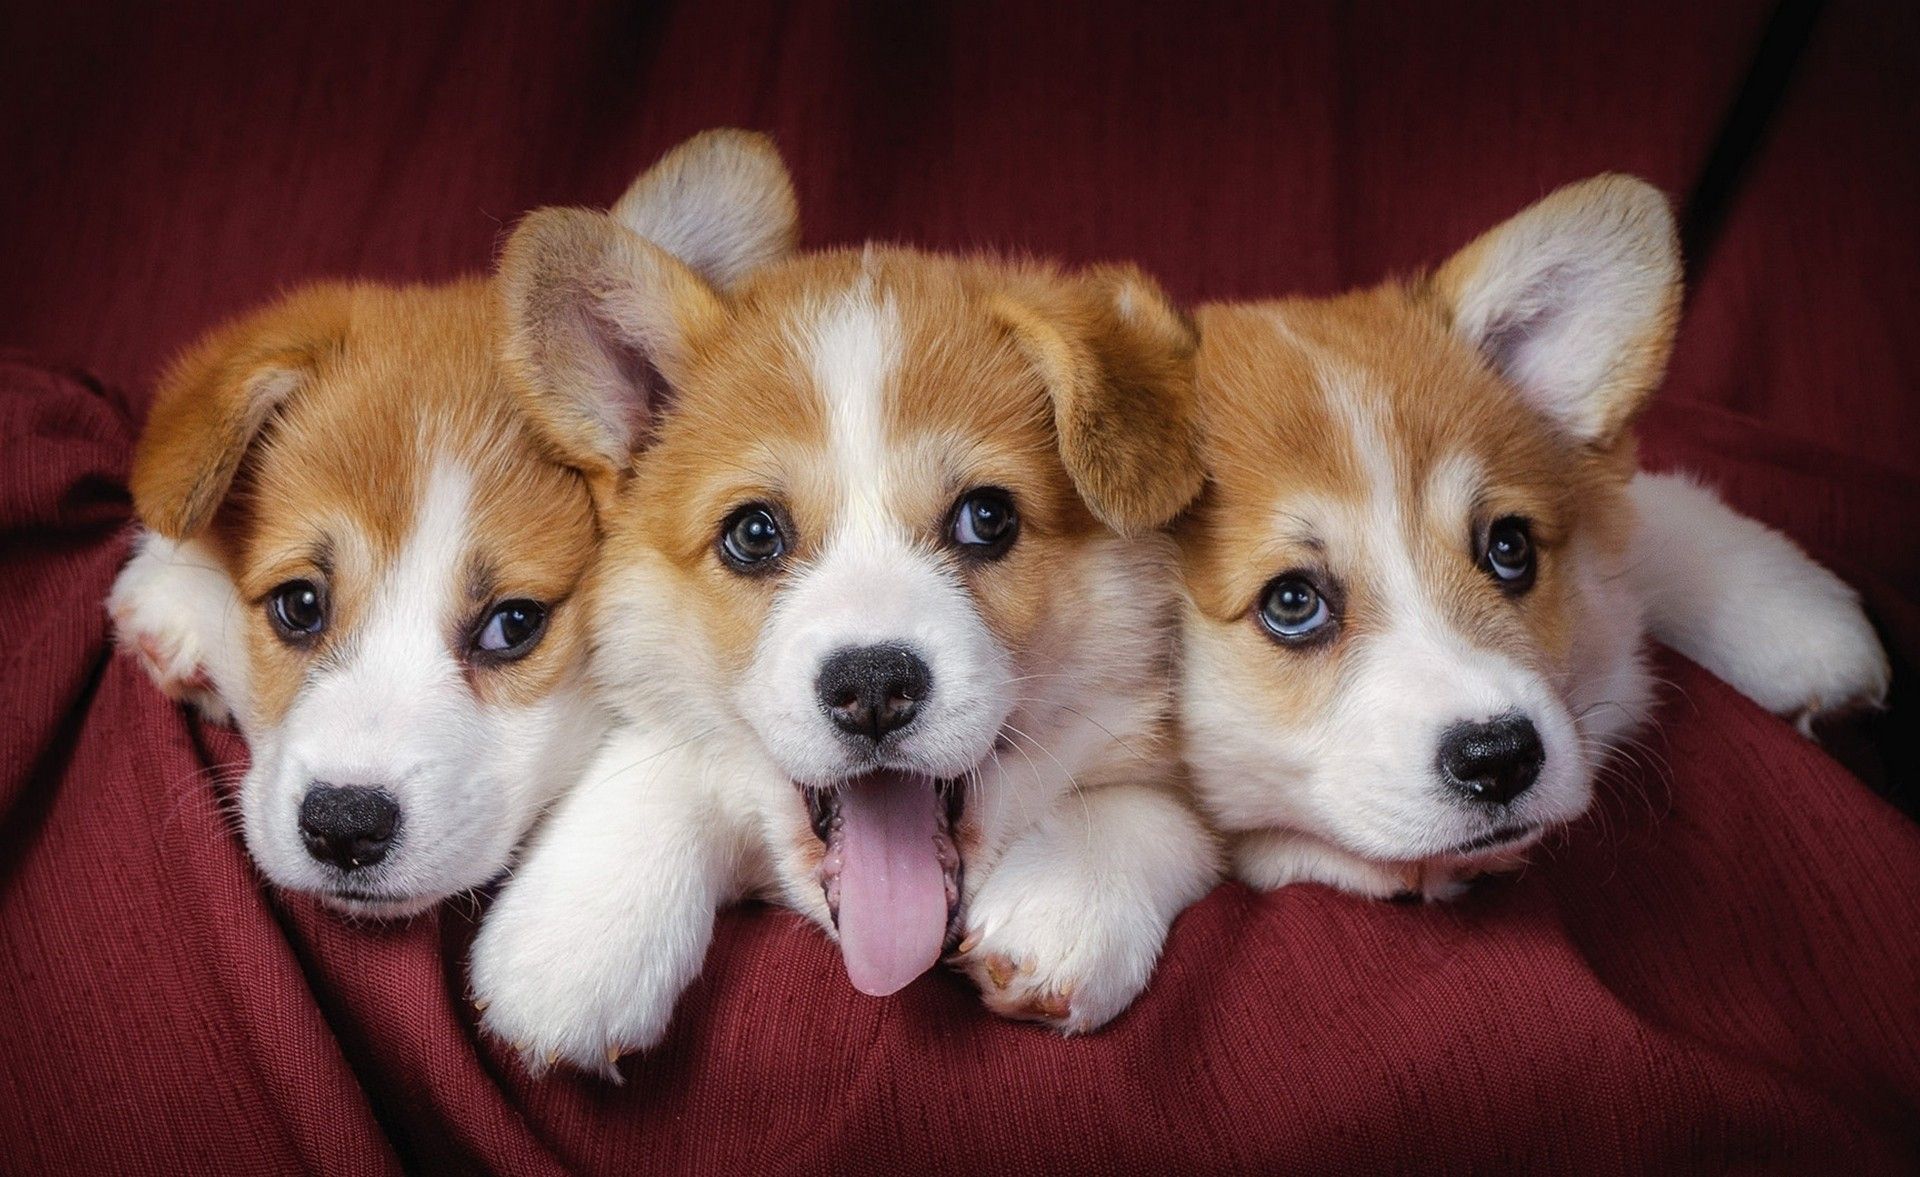 نمای Full HD از سه بچه سگ کیوت کوچولو برای پست